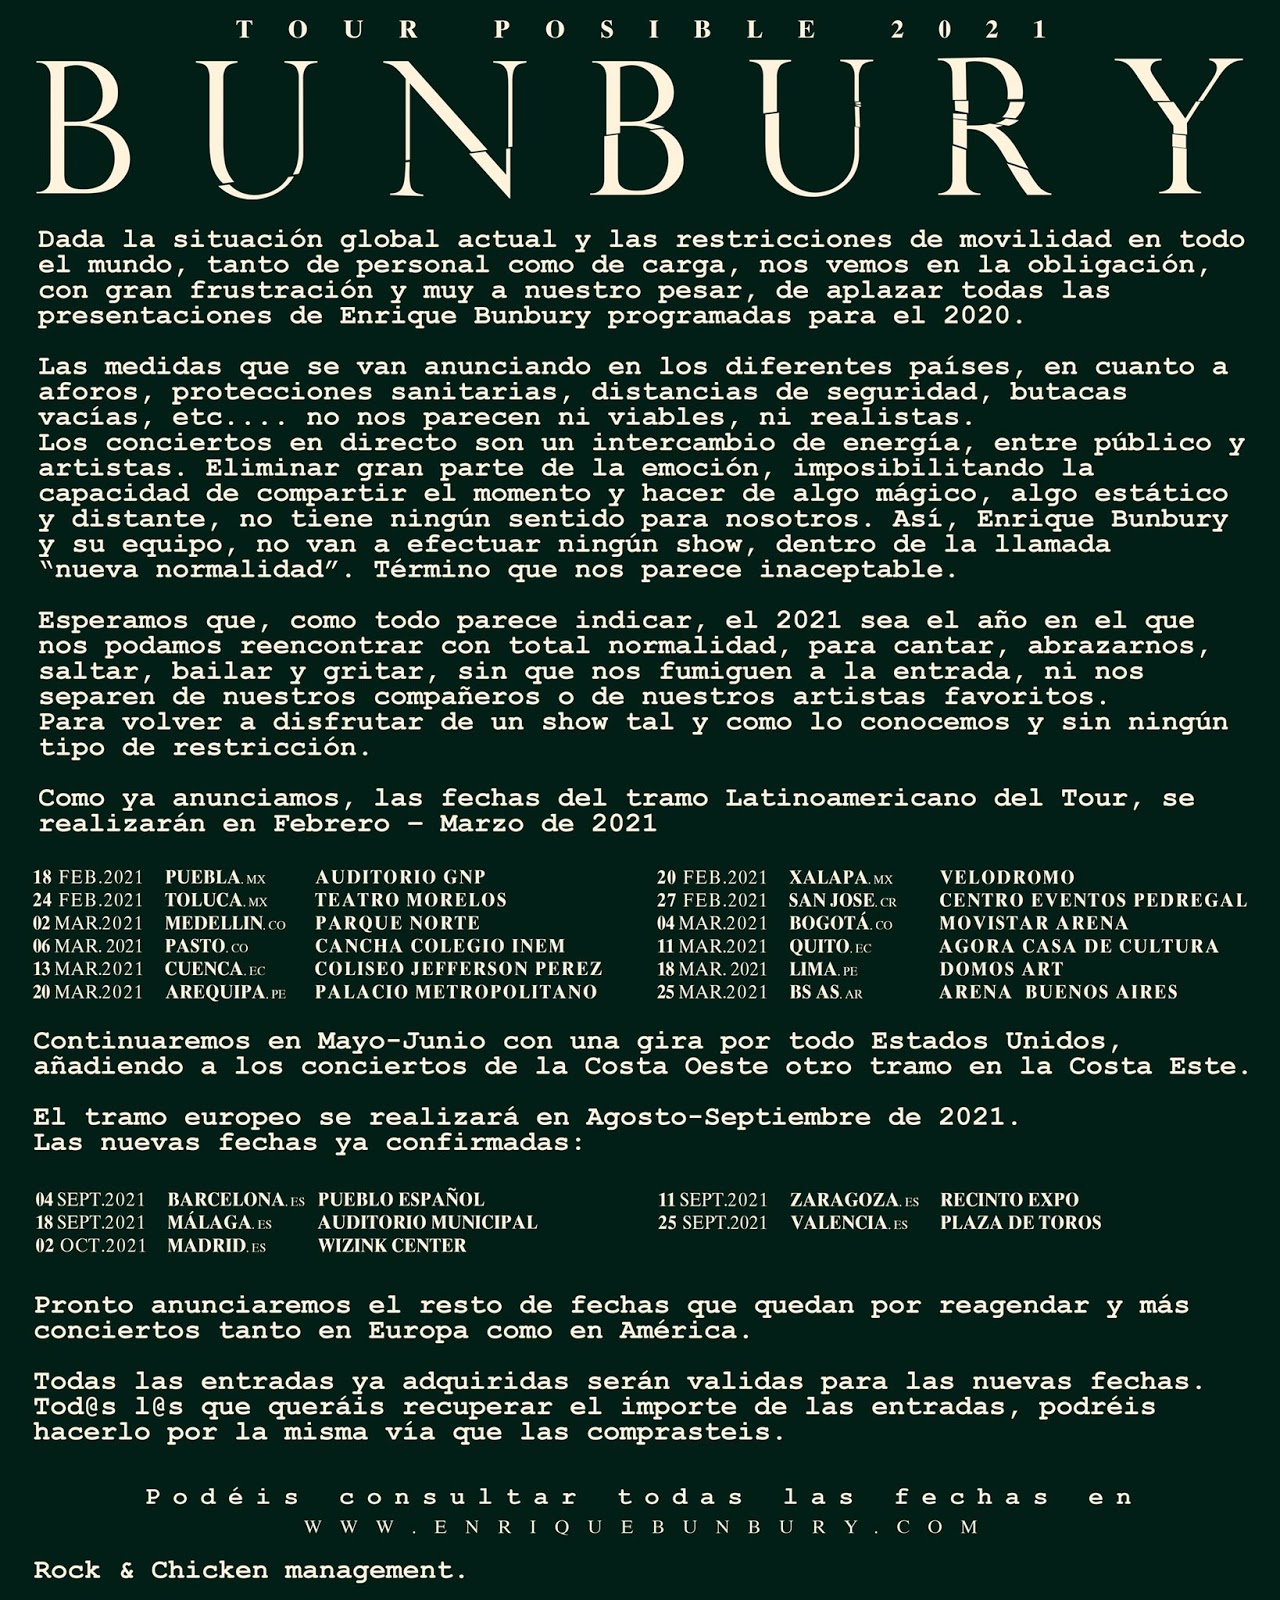 Enrique Bunbury: Posible (2020) - Página 4 Bunburyfechas